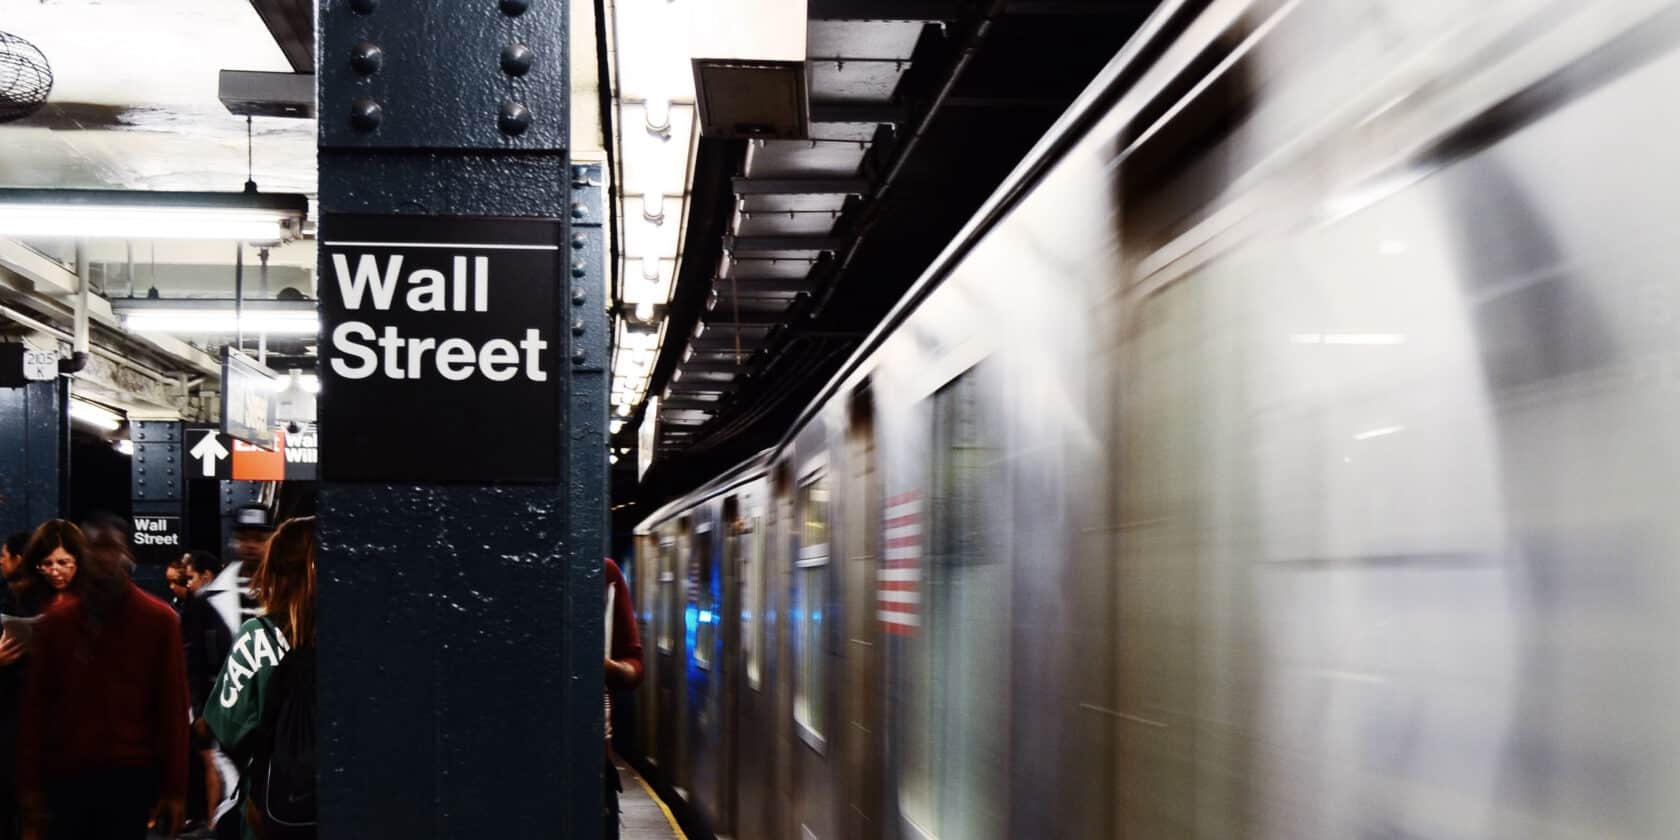 Wall Street sign at a New York subway station.